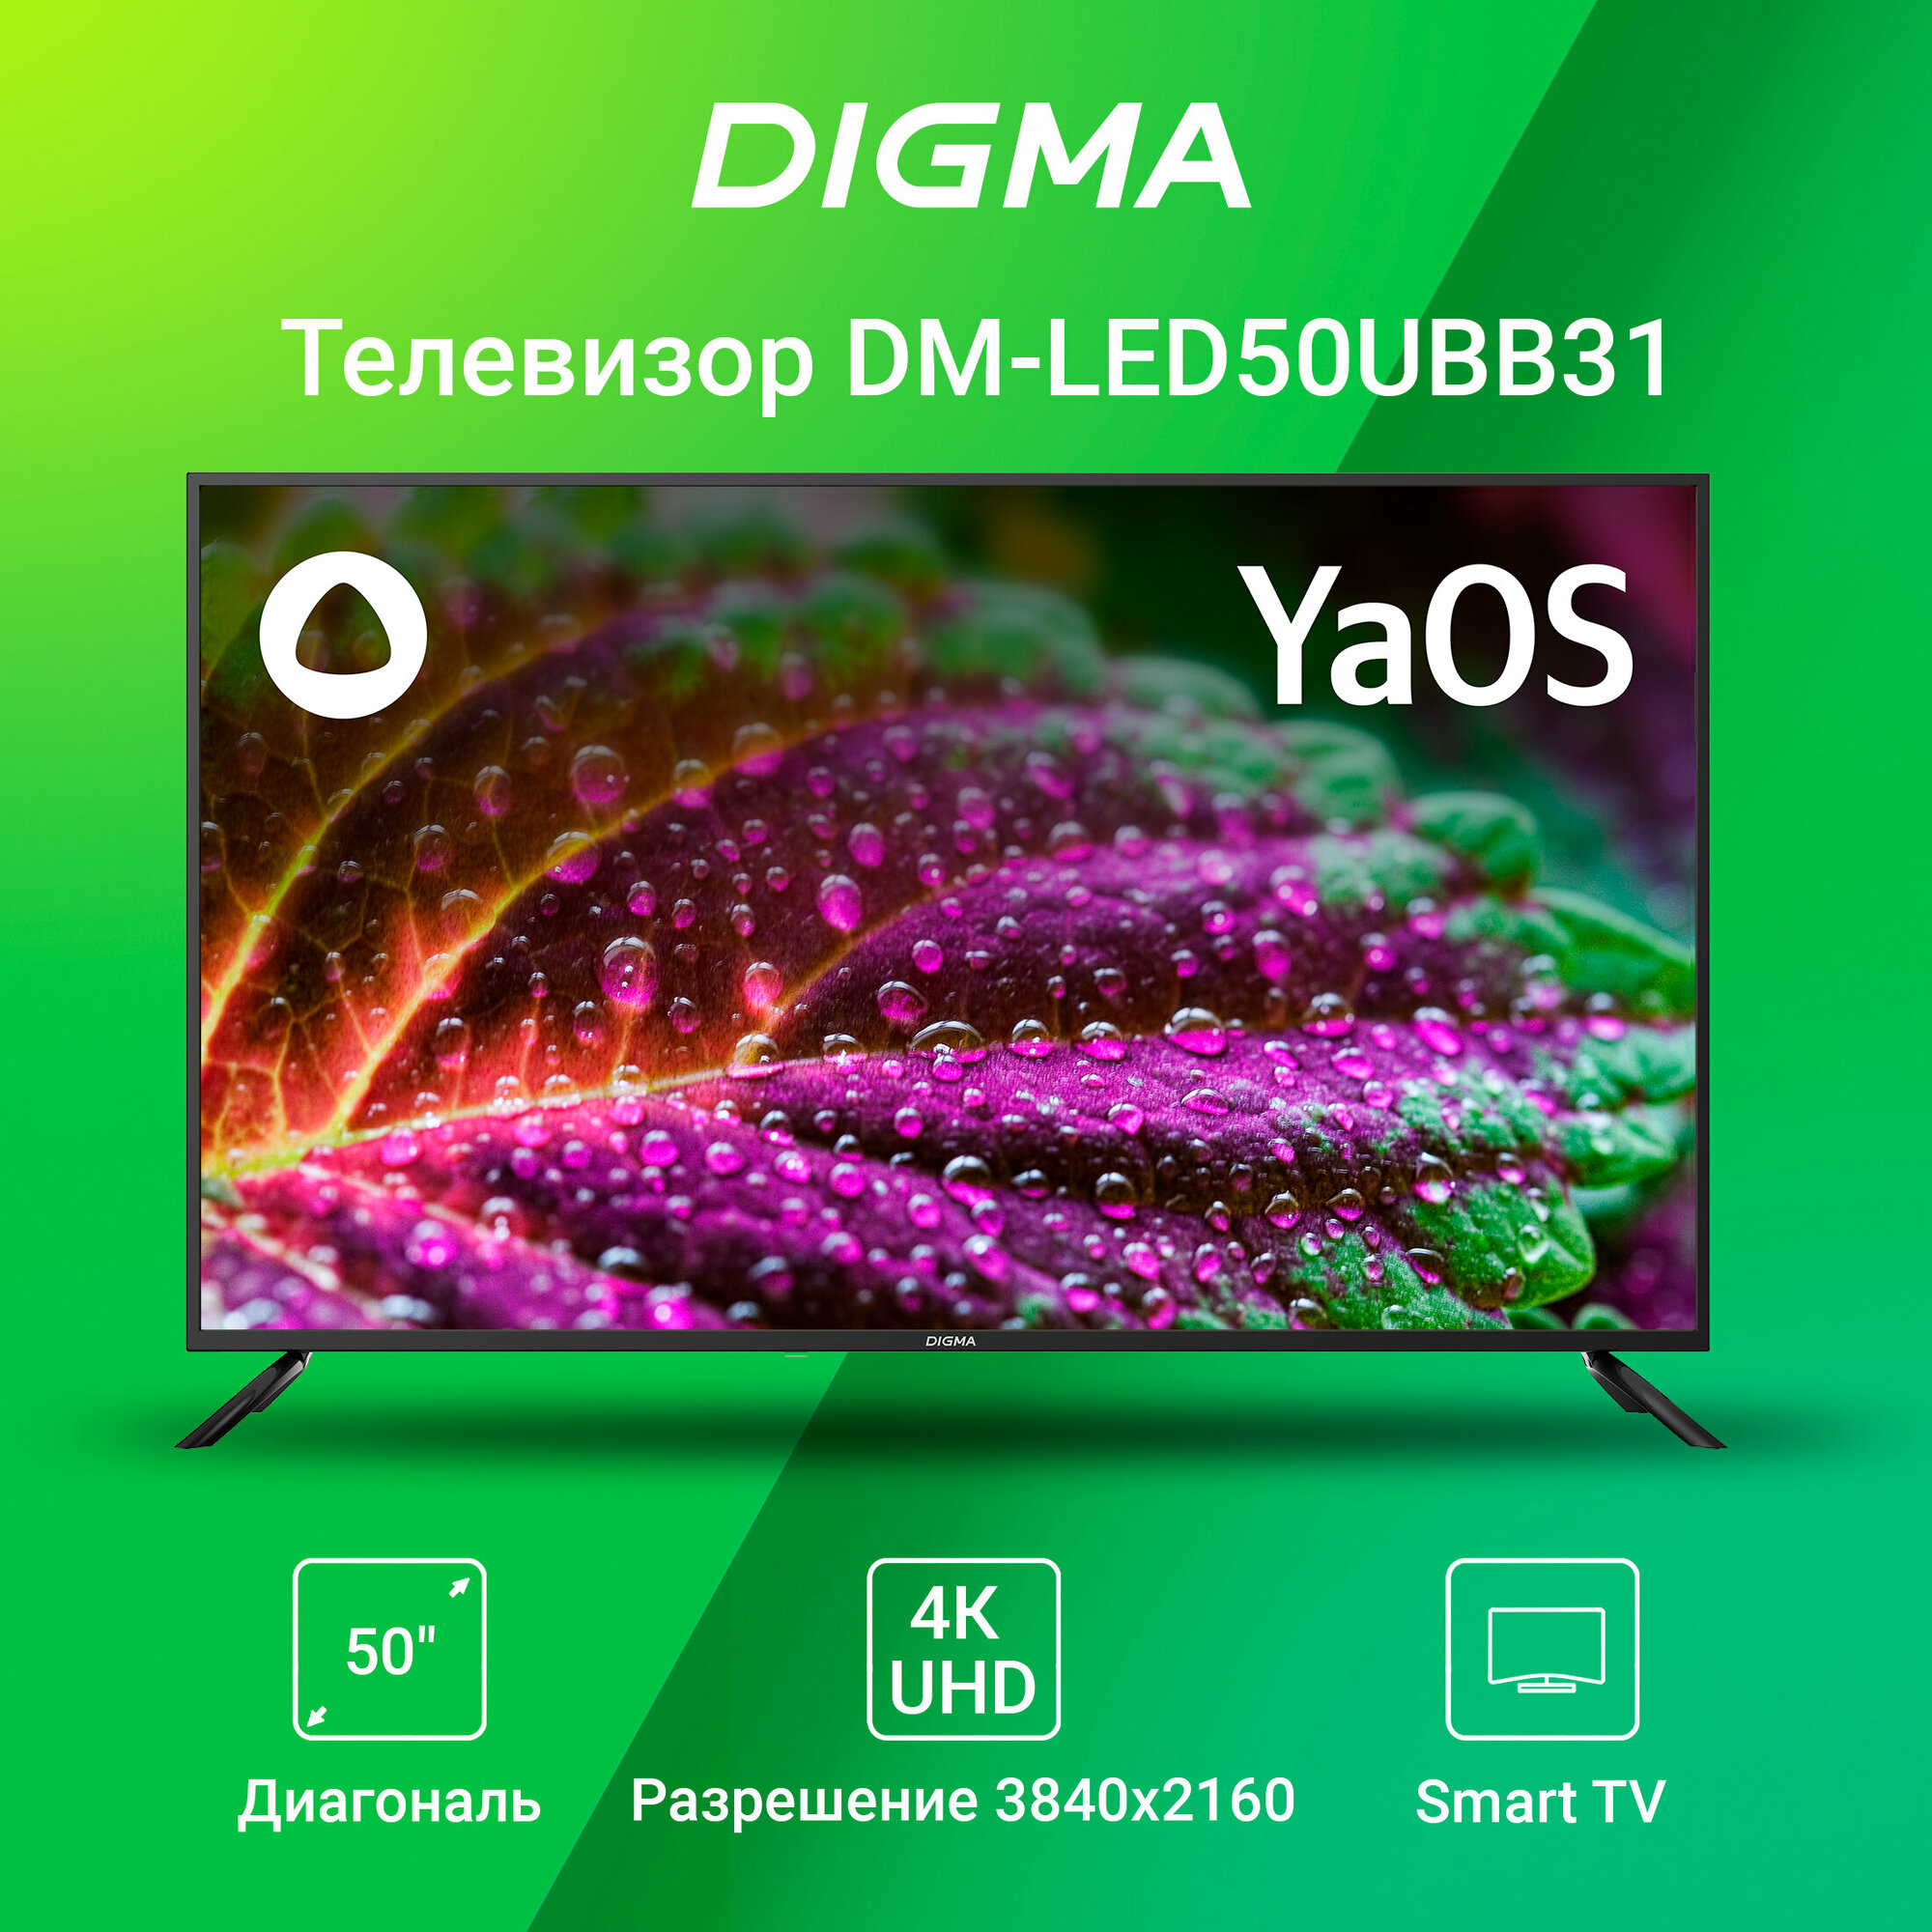 Телевизор Digma Яндекс. ТВ DM-LED50UBB31, 50", LED, 4K Ultra HD, Яндекс. ТВ, черный